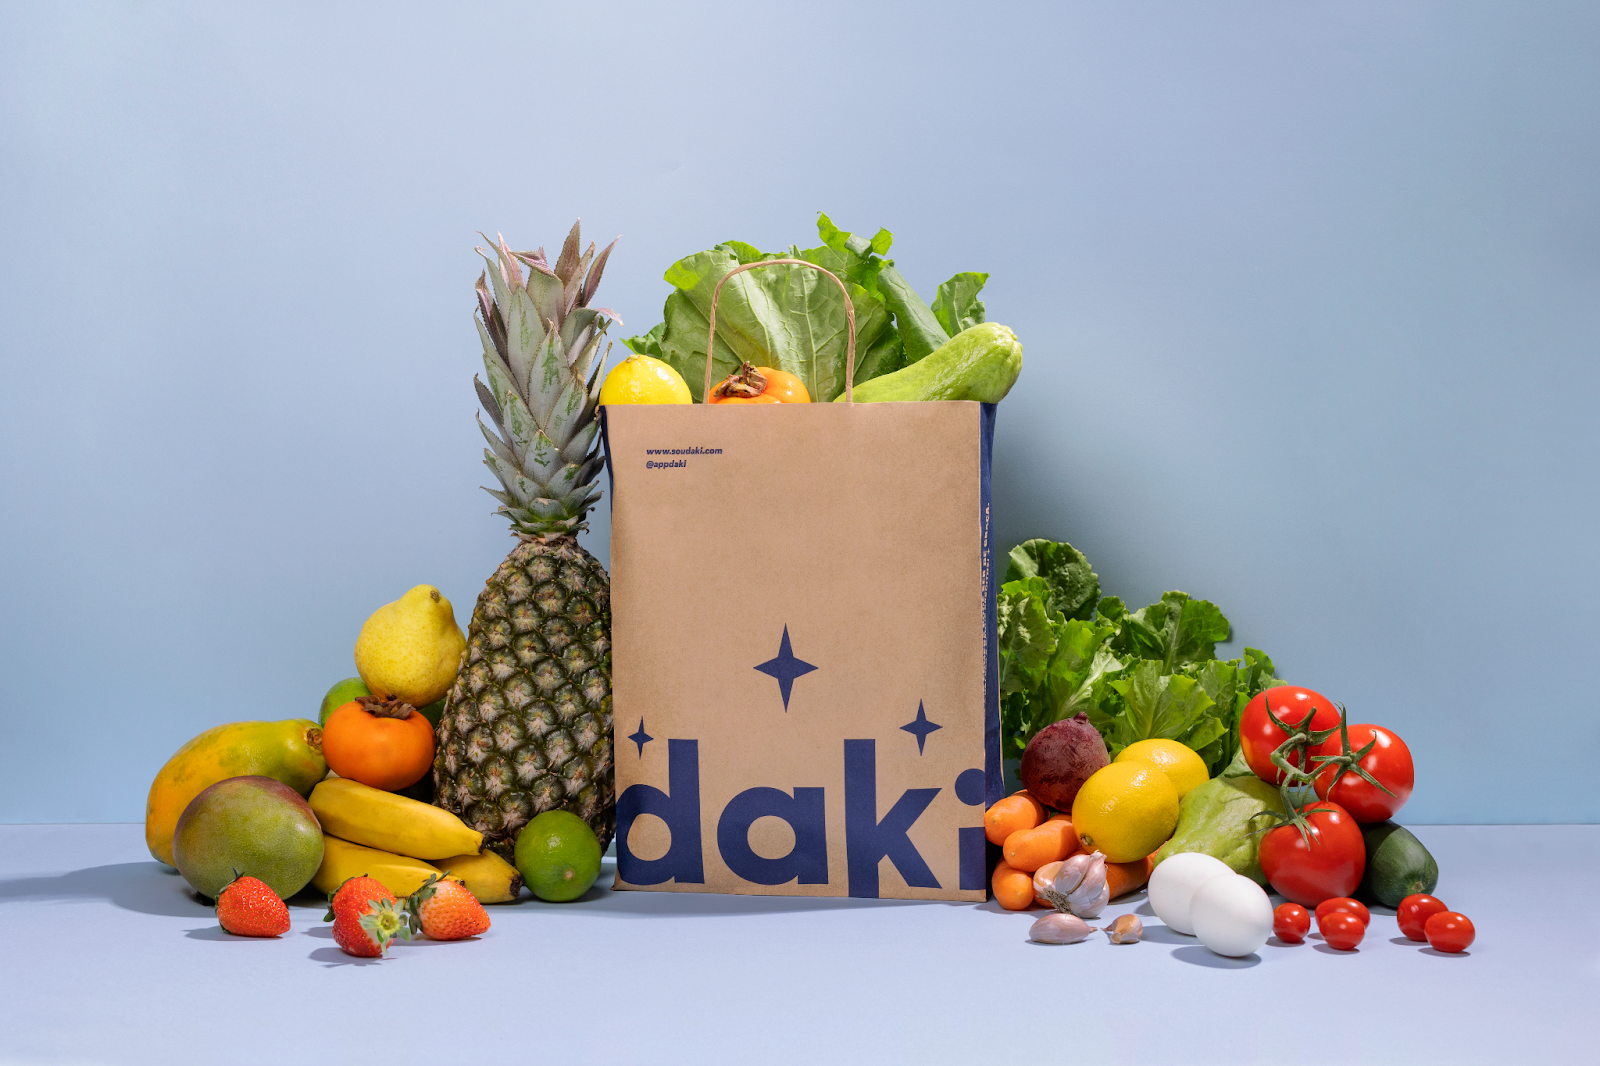 Case Daki: Branding Insights com Purple Metrics
A Daki, aplicativo de supermercado online e essenciais sob demanda,nasceu com a missão de revolucionar a forma como as pessoas fazem mercado. 